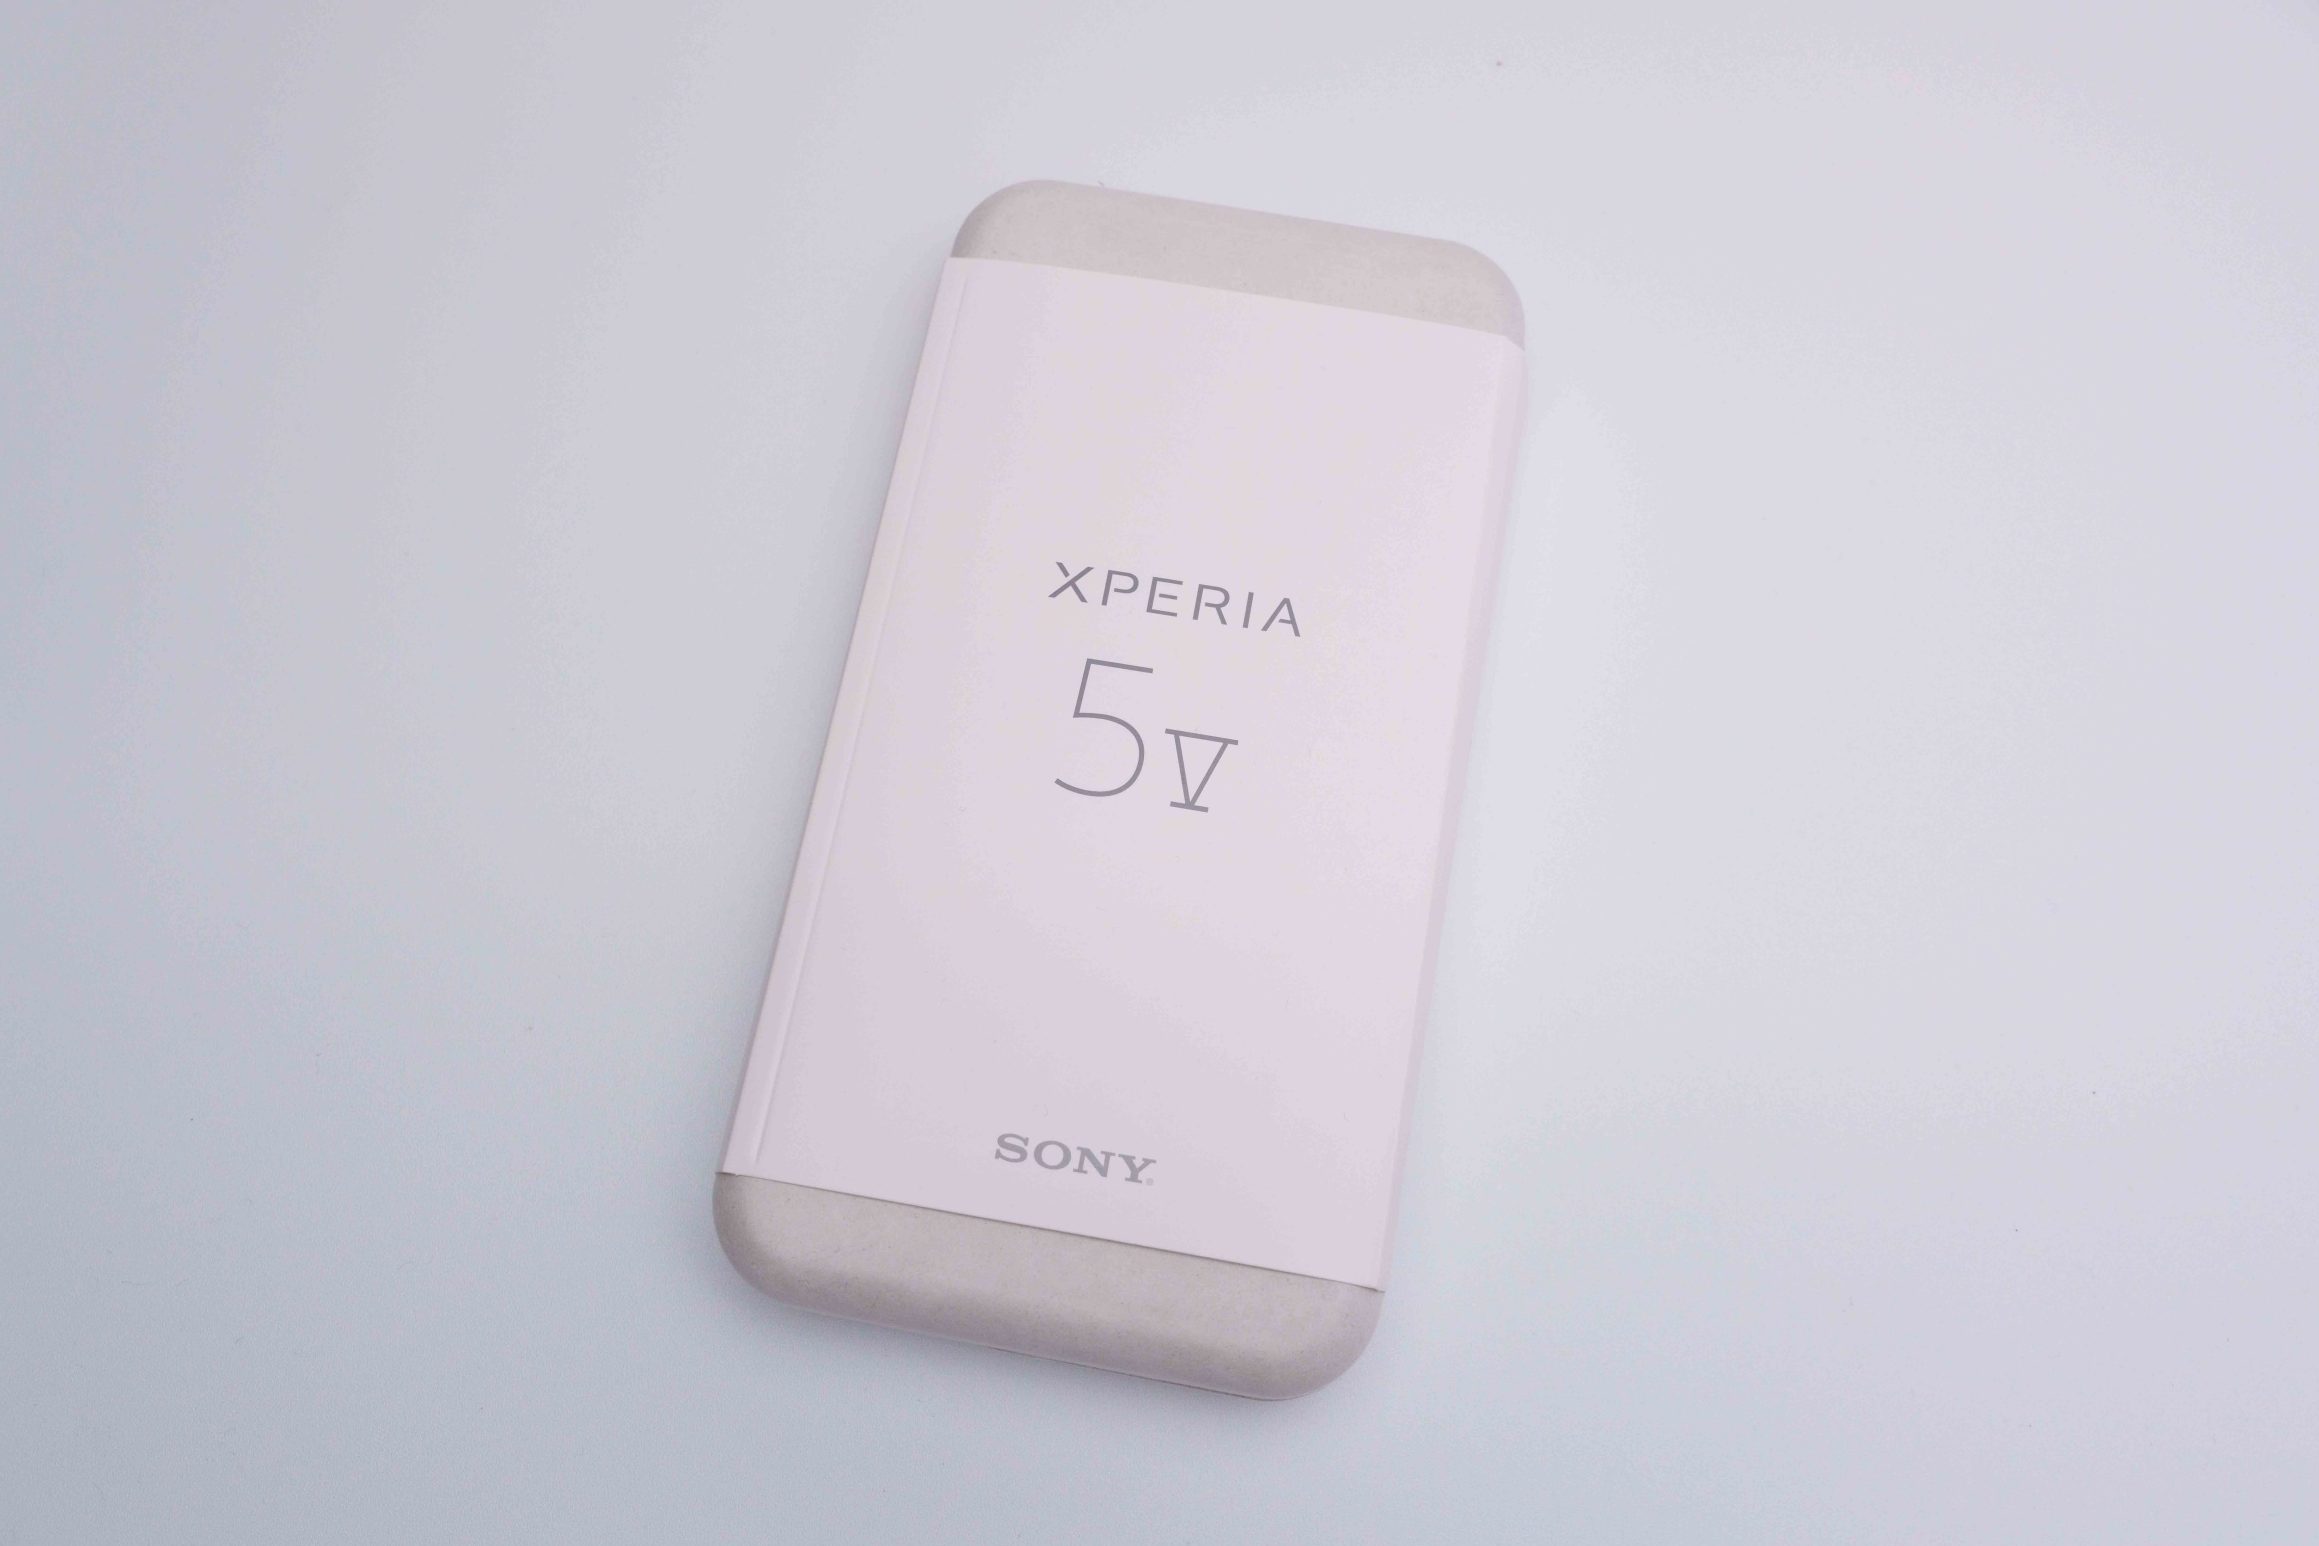 Xperia 5 Vパッケージ